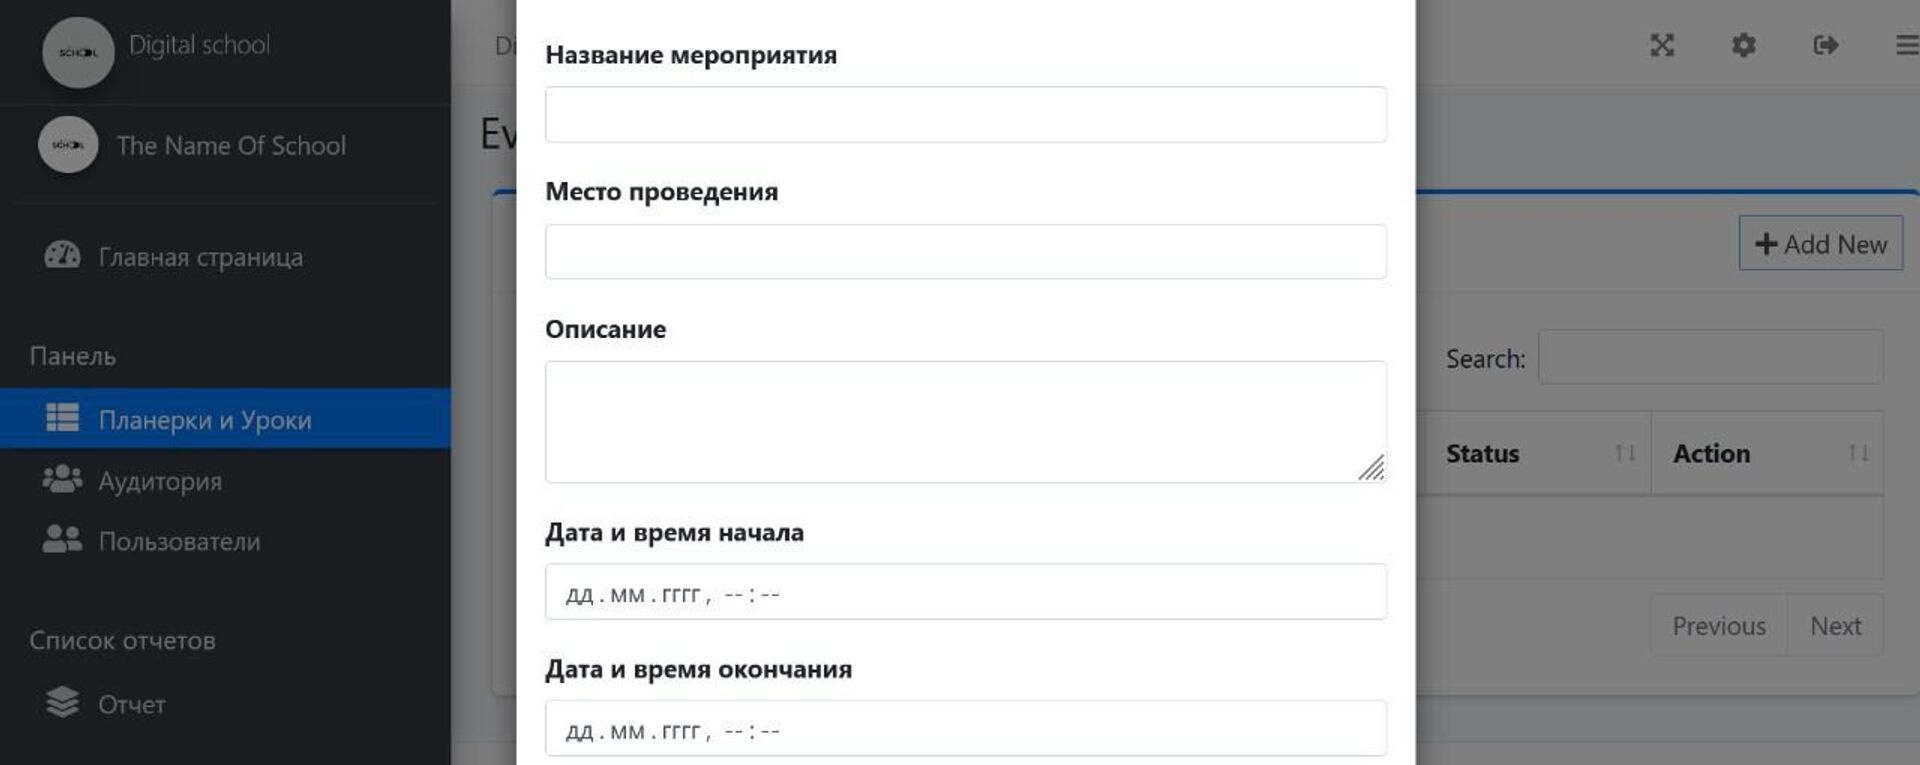 Прогульщикам на заметку: выпускница НИШ создала приложение для учета посещаемости вузов - Sputnik Казахстан, 1920, 05.11.2021